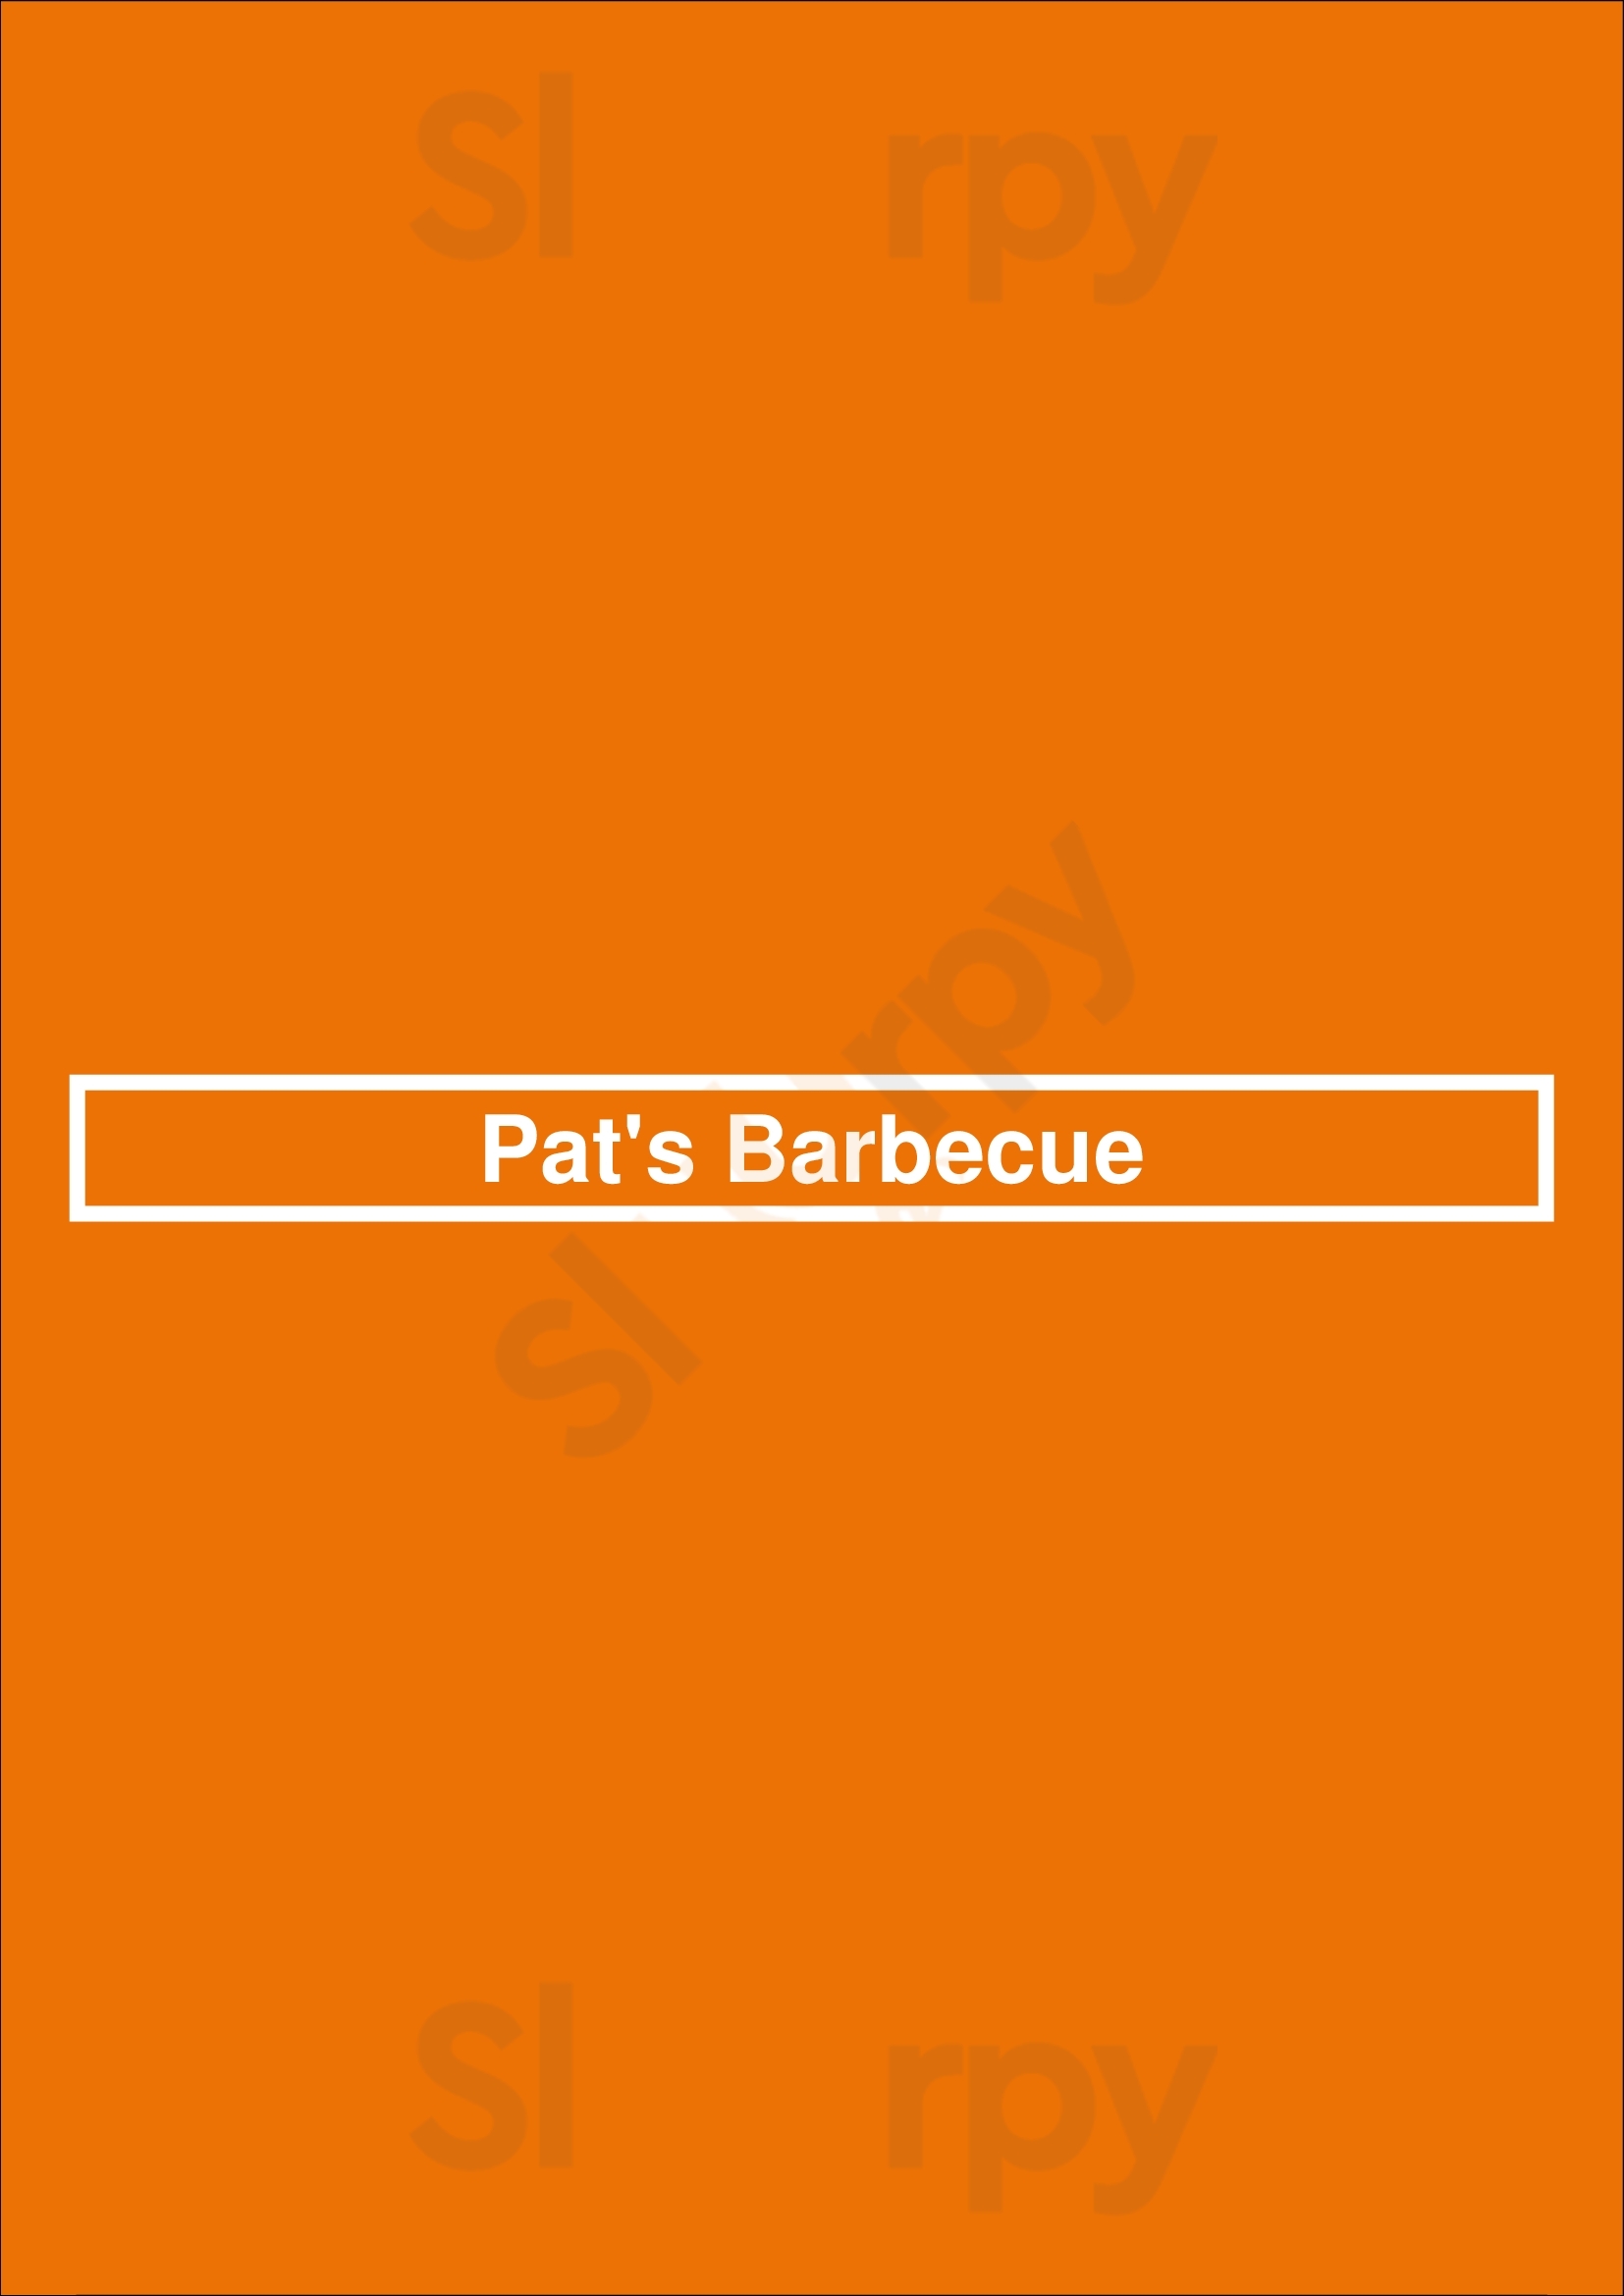 Pat's Barbecue Salt Lake City Menu - 1